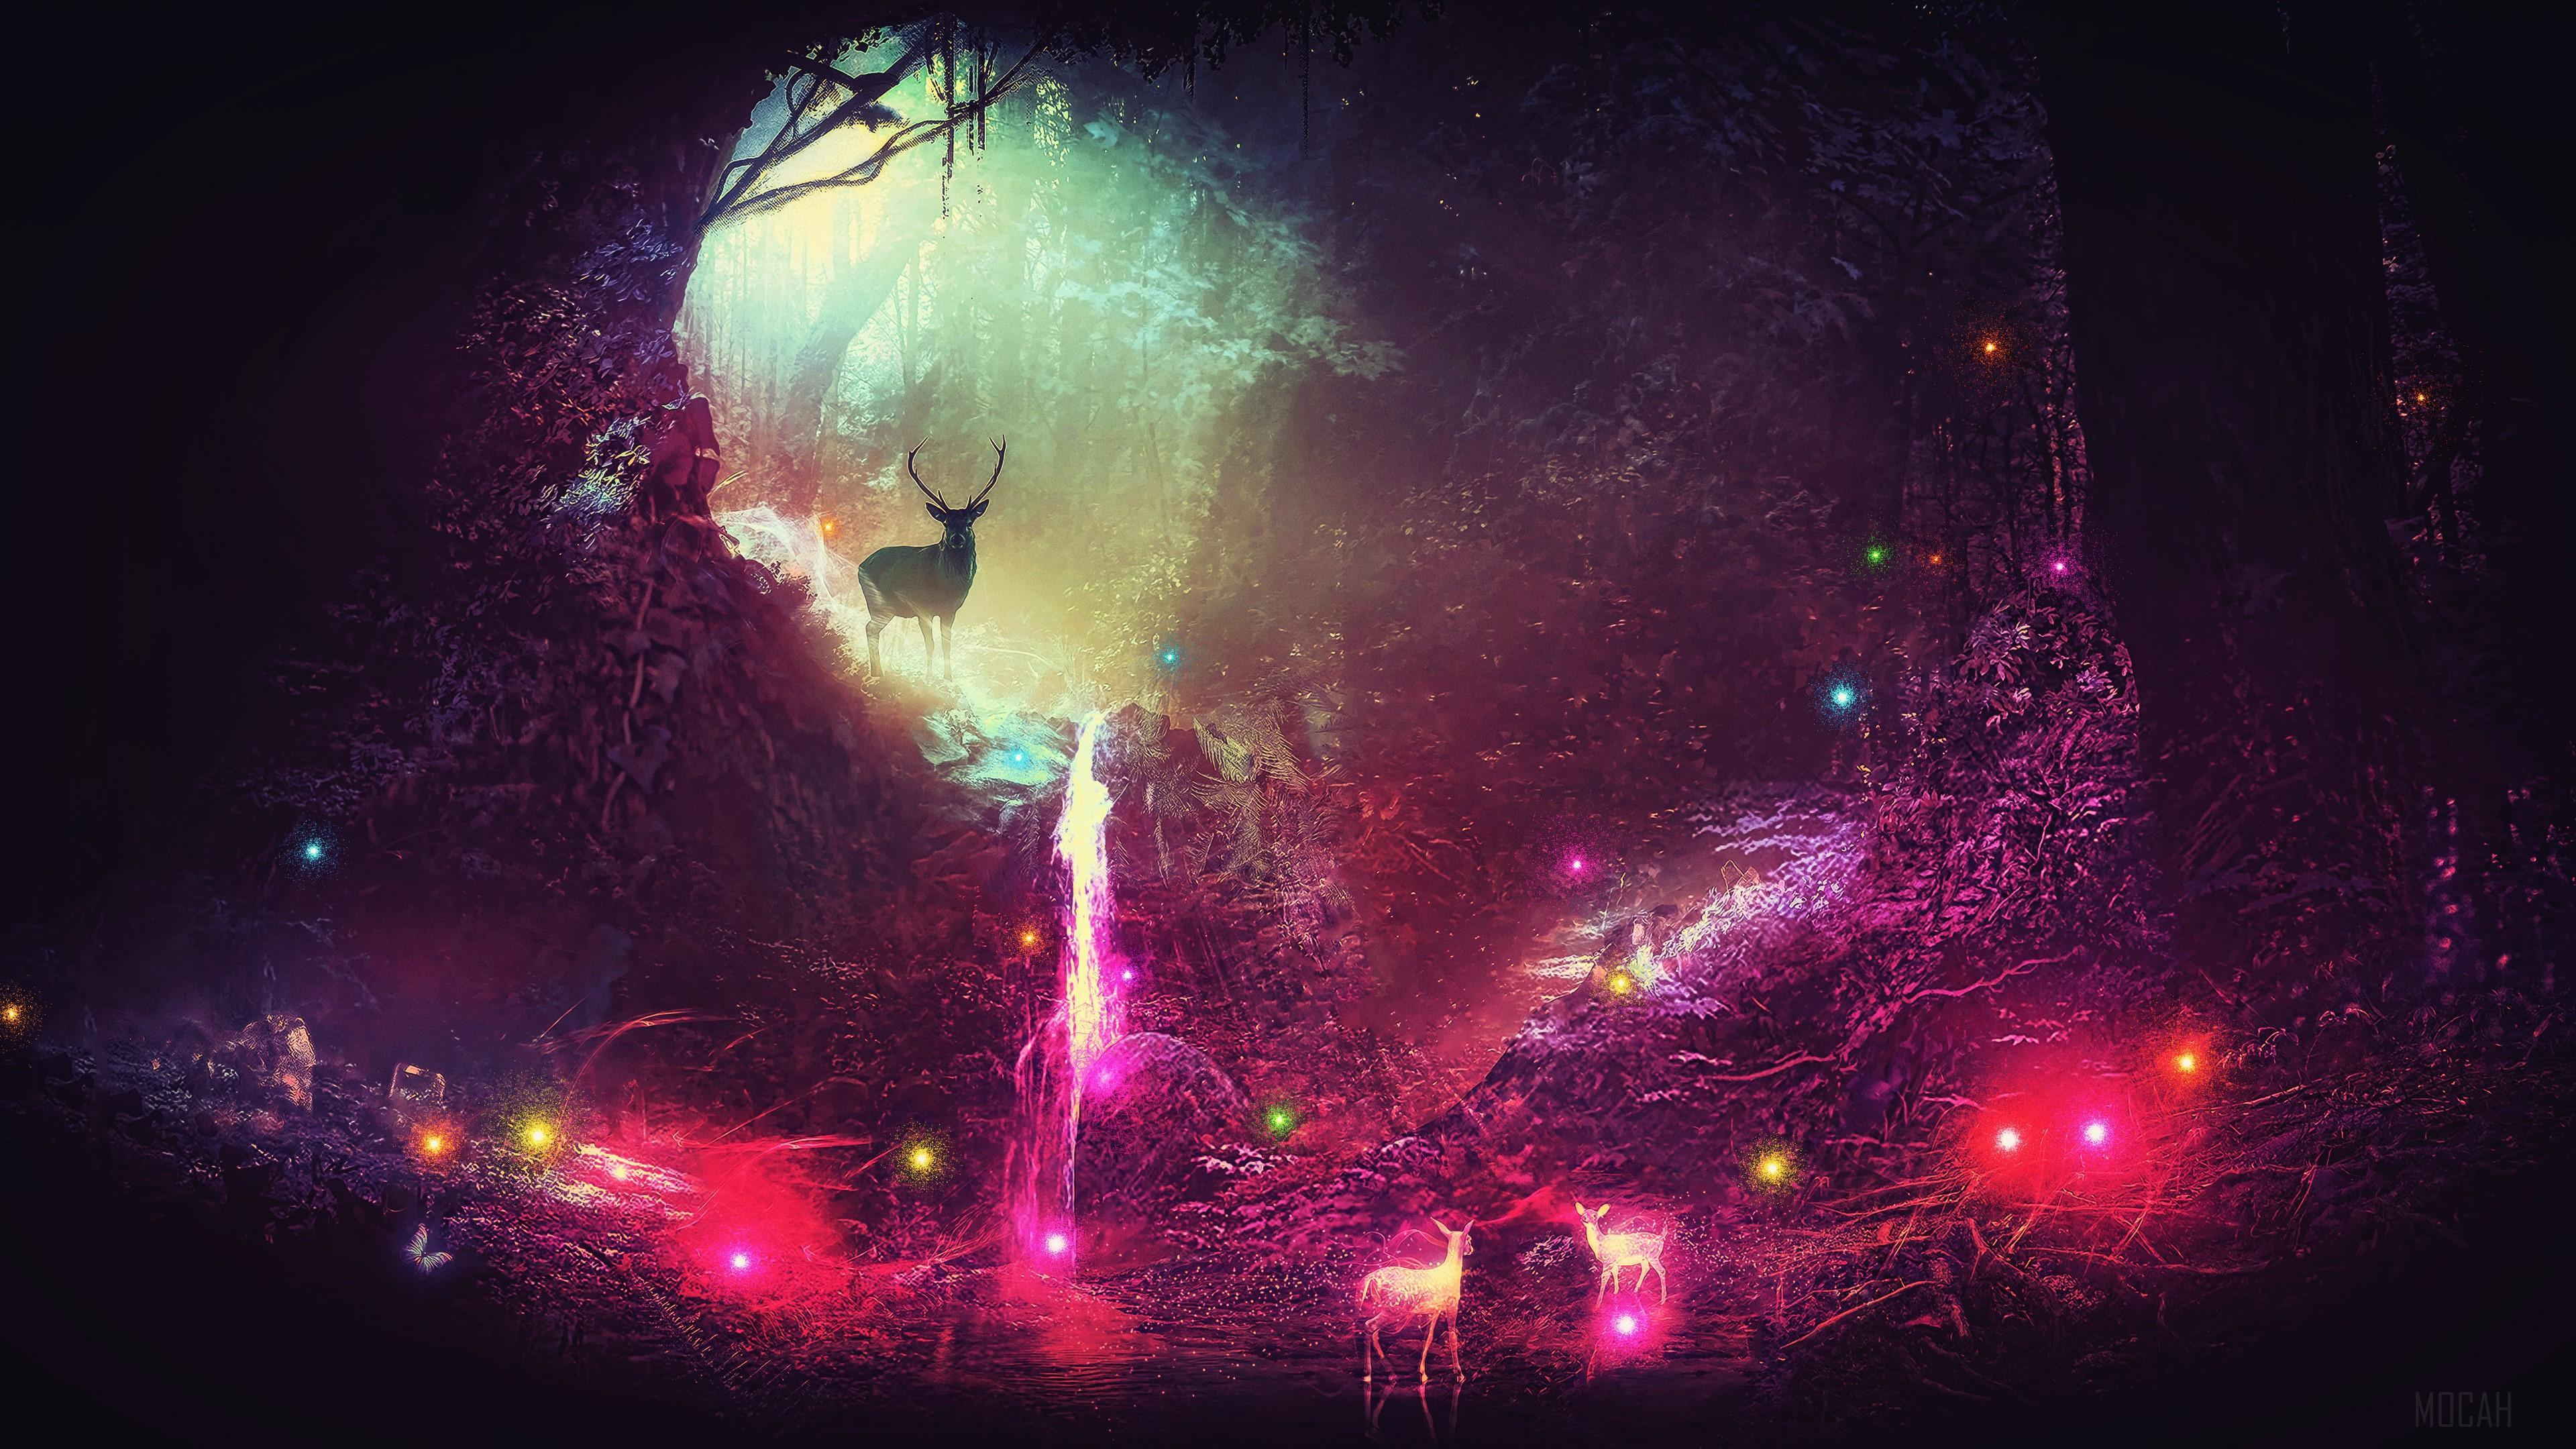 HD wallpaper, Fantasy Magic Deer Artwork 4K